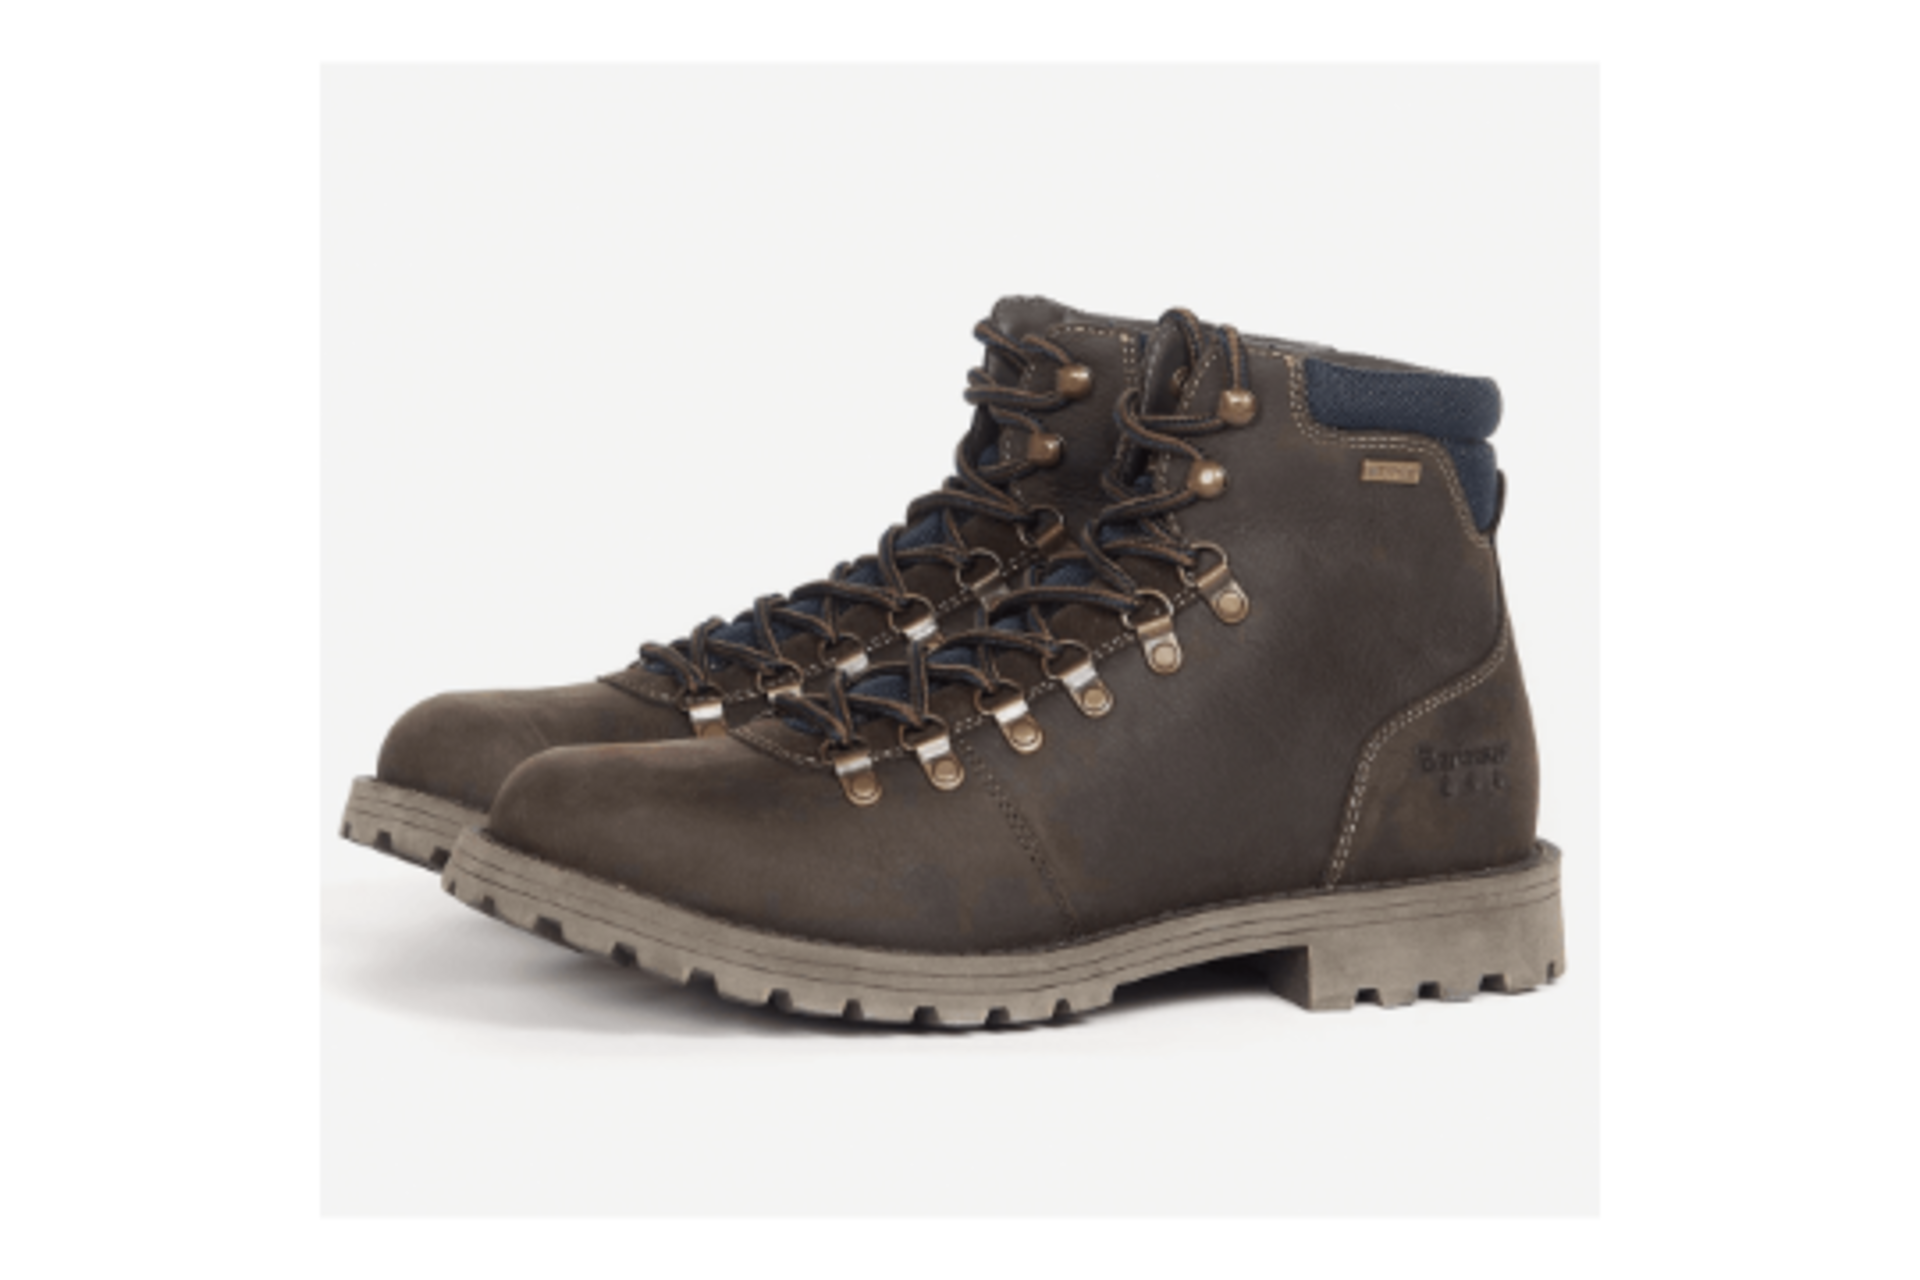 RRP £159 - New Size 8 Barbour Oak Quantock Hiker Boots NO VAT